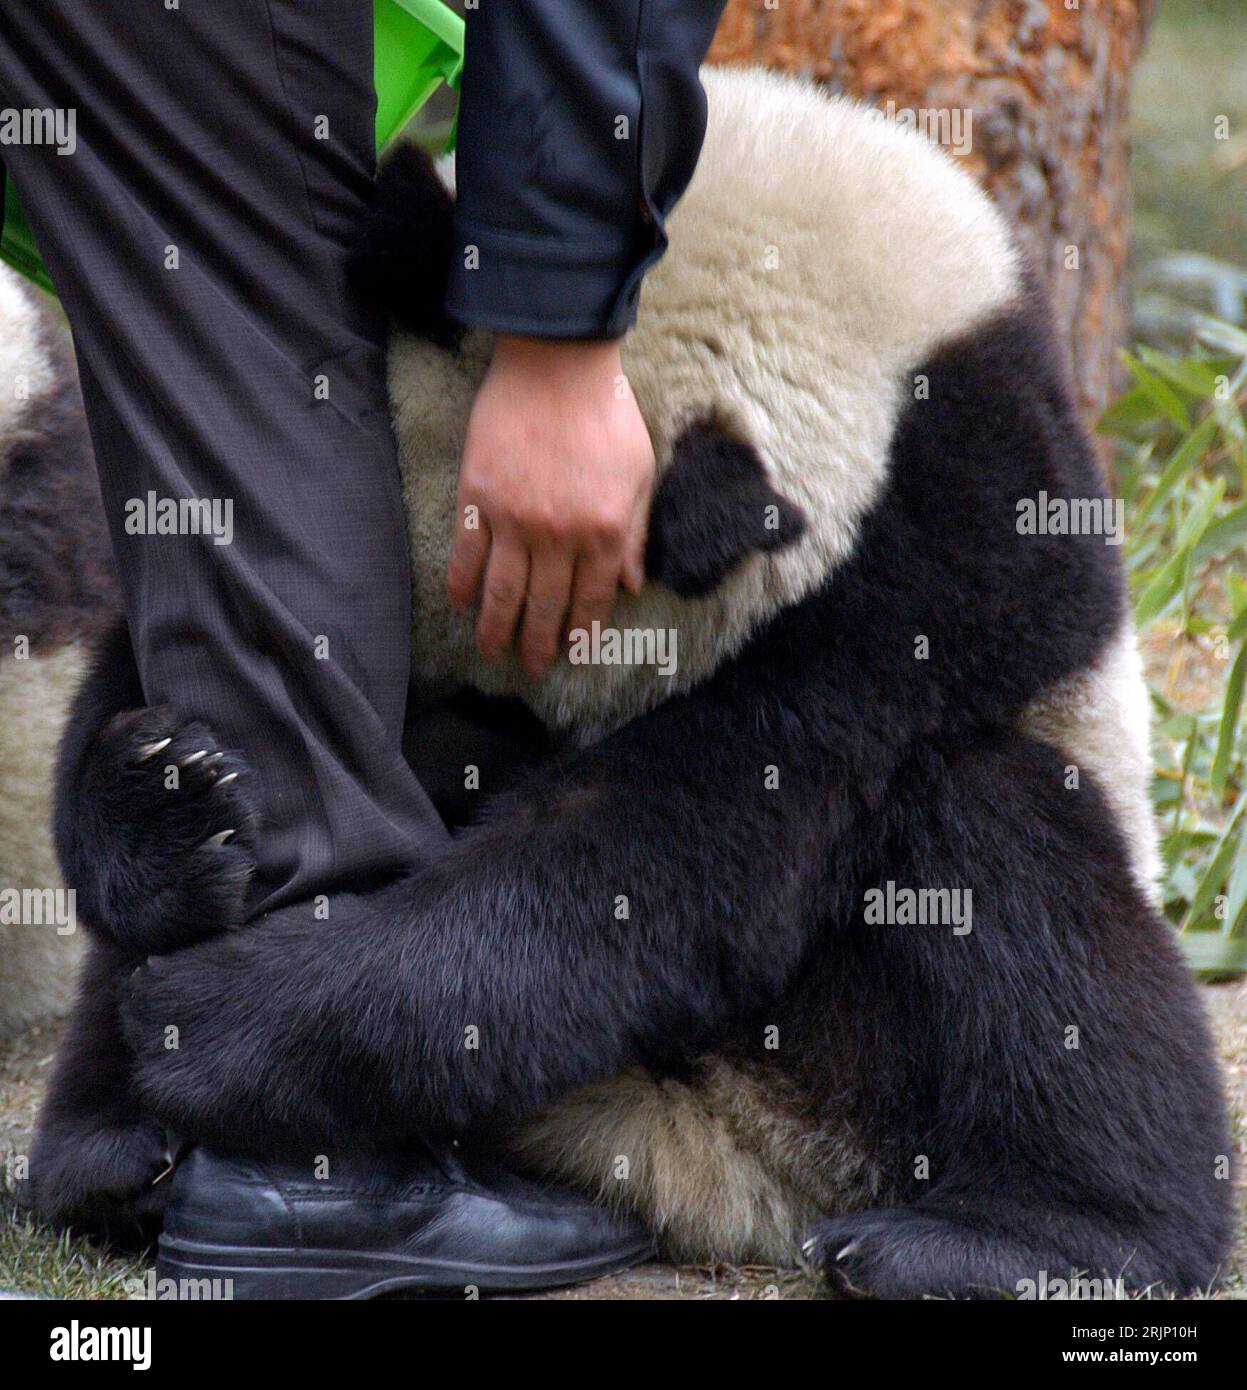 Bildnummer : 51046808 Datum : 04.01.2006 Copyright : imago/Xinhua Riesenpanda umklammert das Bein eines Pflegers im Naturschutzgebiet Wolong in der südwestchinesischen Provinz Sichuan- PUBLICATIONxNOTxINxCHN , Tiere , Körperteile , kurios ; 2006, Wolong, Sichuan, Riesenpanda, Panda, Pandas, Pandabär, Pandabären, Aufzuchtstation, Aufzuchtstationen, Naturschutzgebiete, Tierpfleger, klammert, klammern, klammernd, umklammern, streicheln, streichelt, streichelnd, Zuneigung ; , , Kbdig, , Chine / Quadrat, Einzelbild, fermer, Riesenpandas, Ailuropoda melanoleuca Banque D'Images